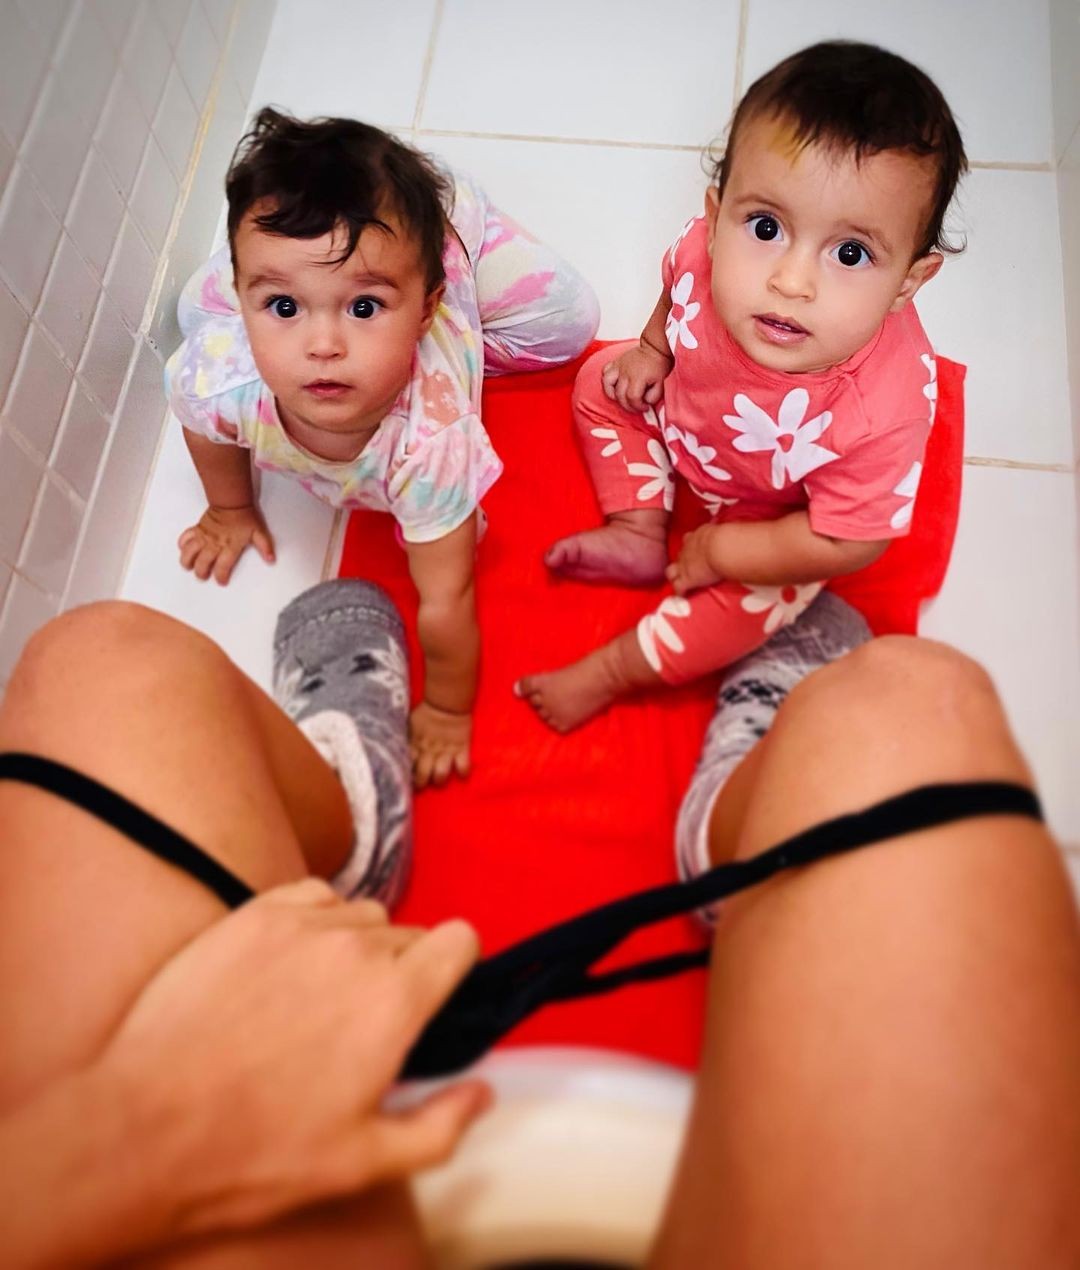 Maternidade real! Nanda Costa compartilha momento inusitado com as gêmeas (Foto: Reprodução/ Instagram)